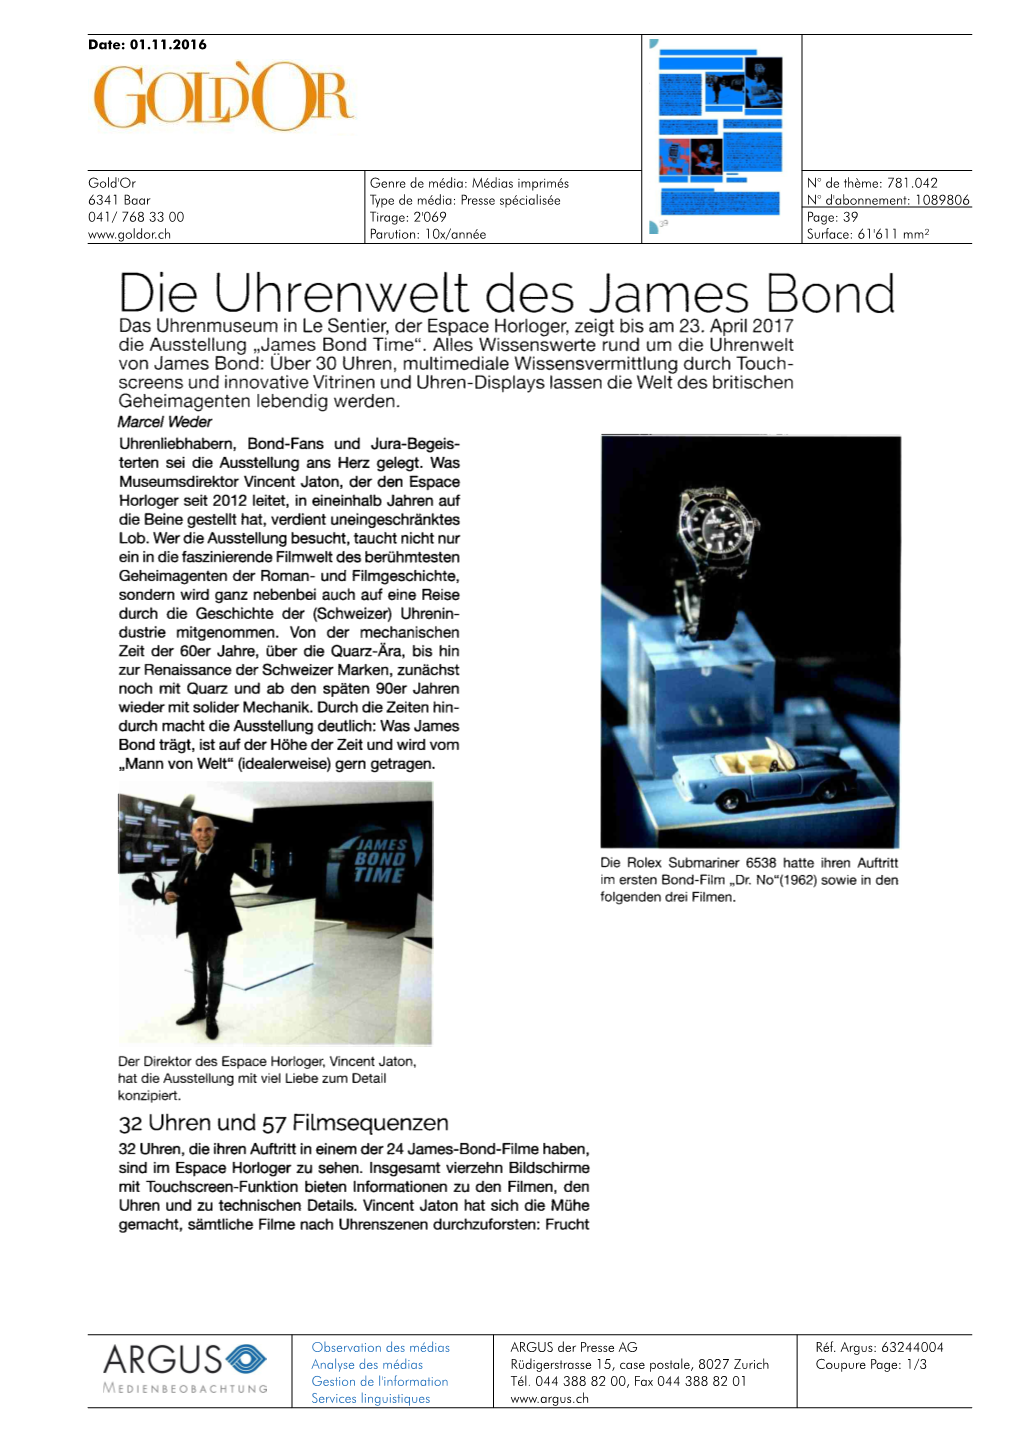 Die Uhrenwelt Des James Bond Das Uhrenmuseum in Le Sentier, Der Espace Horloger, Zeigt Bis Am 23